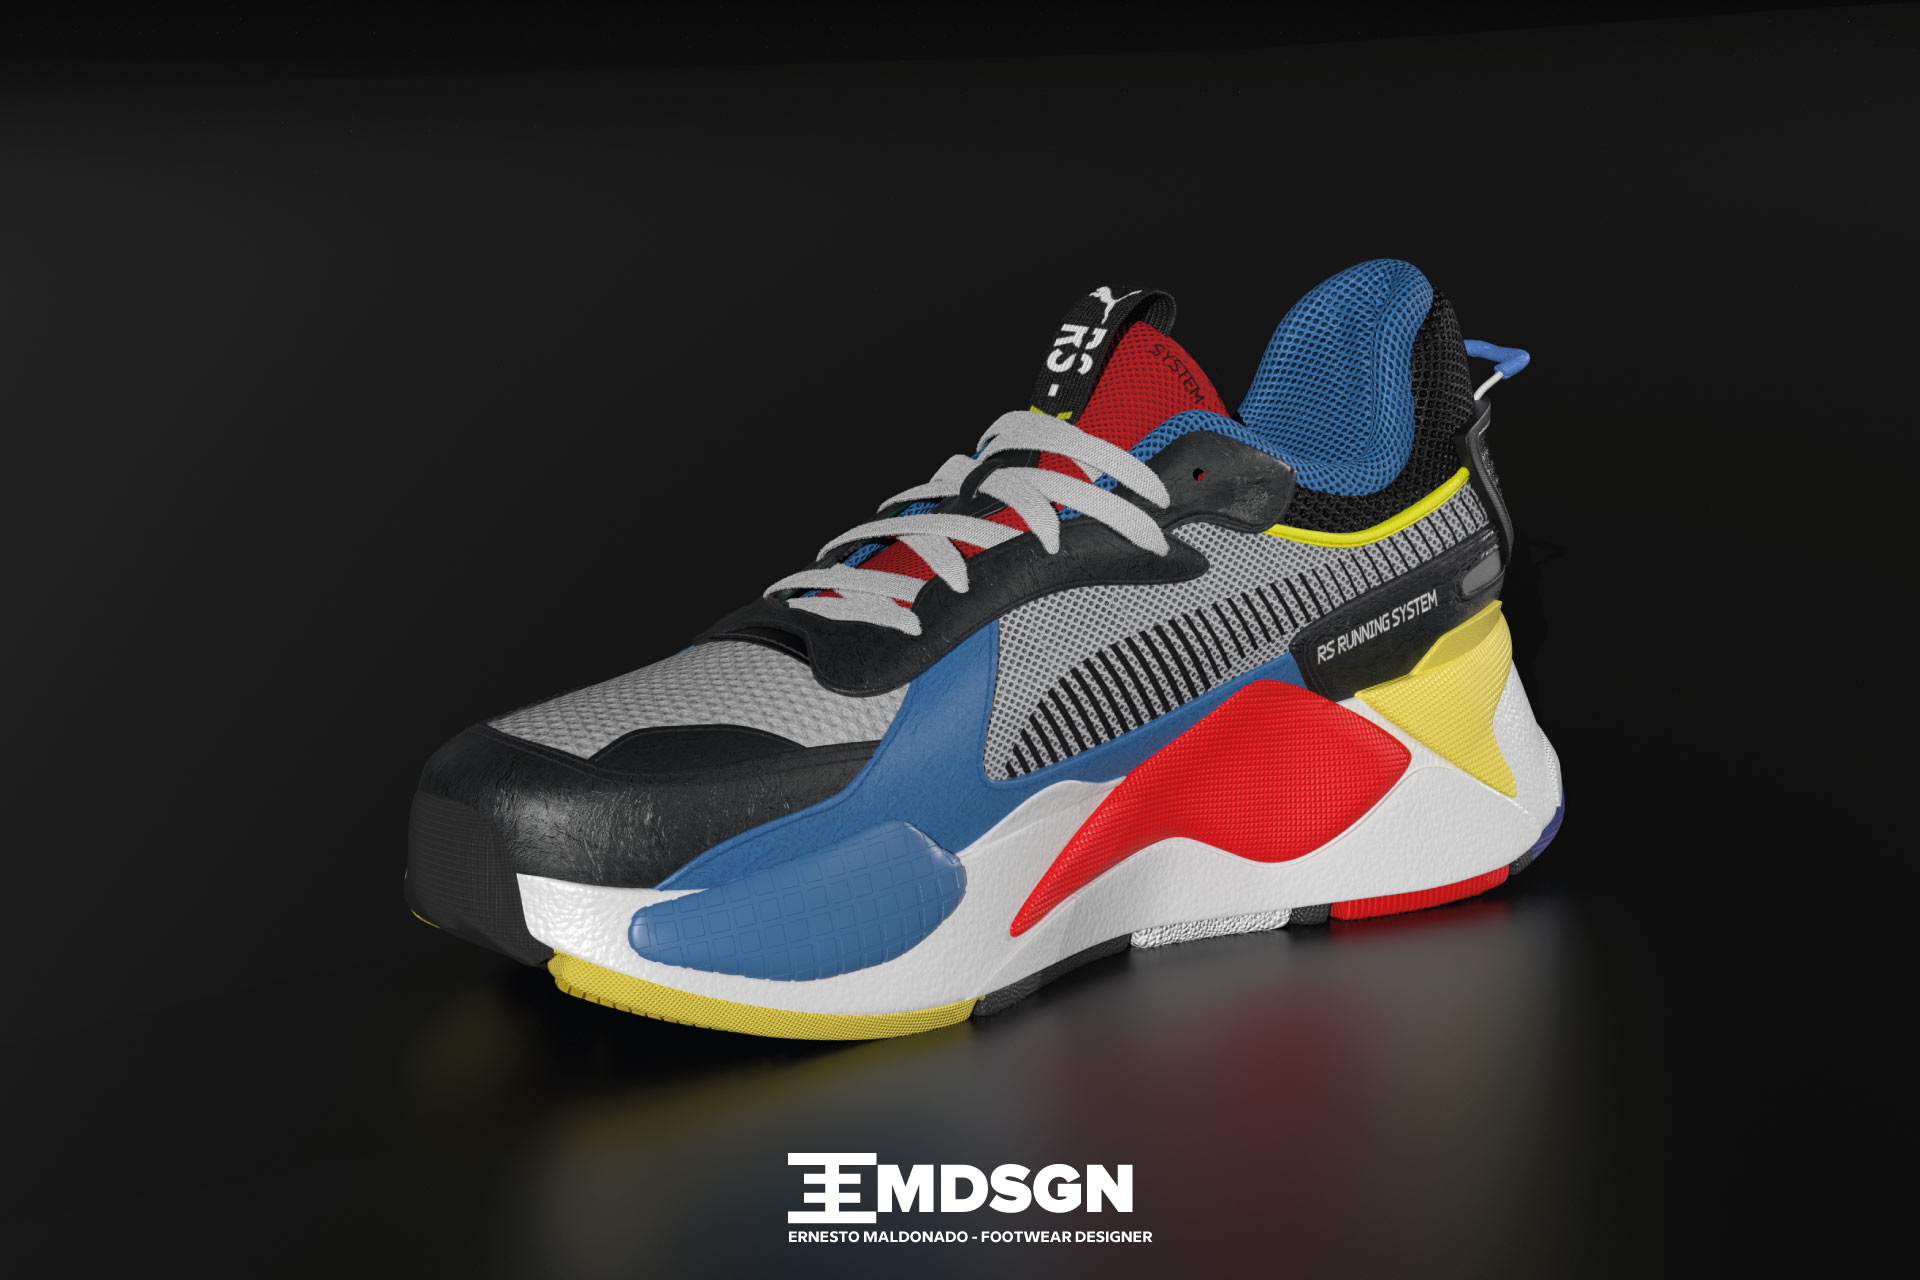 3d footwear design portfolio maldonado ernesto shoe designer